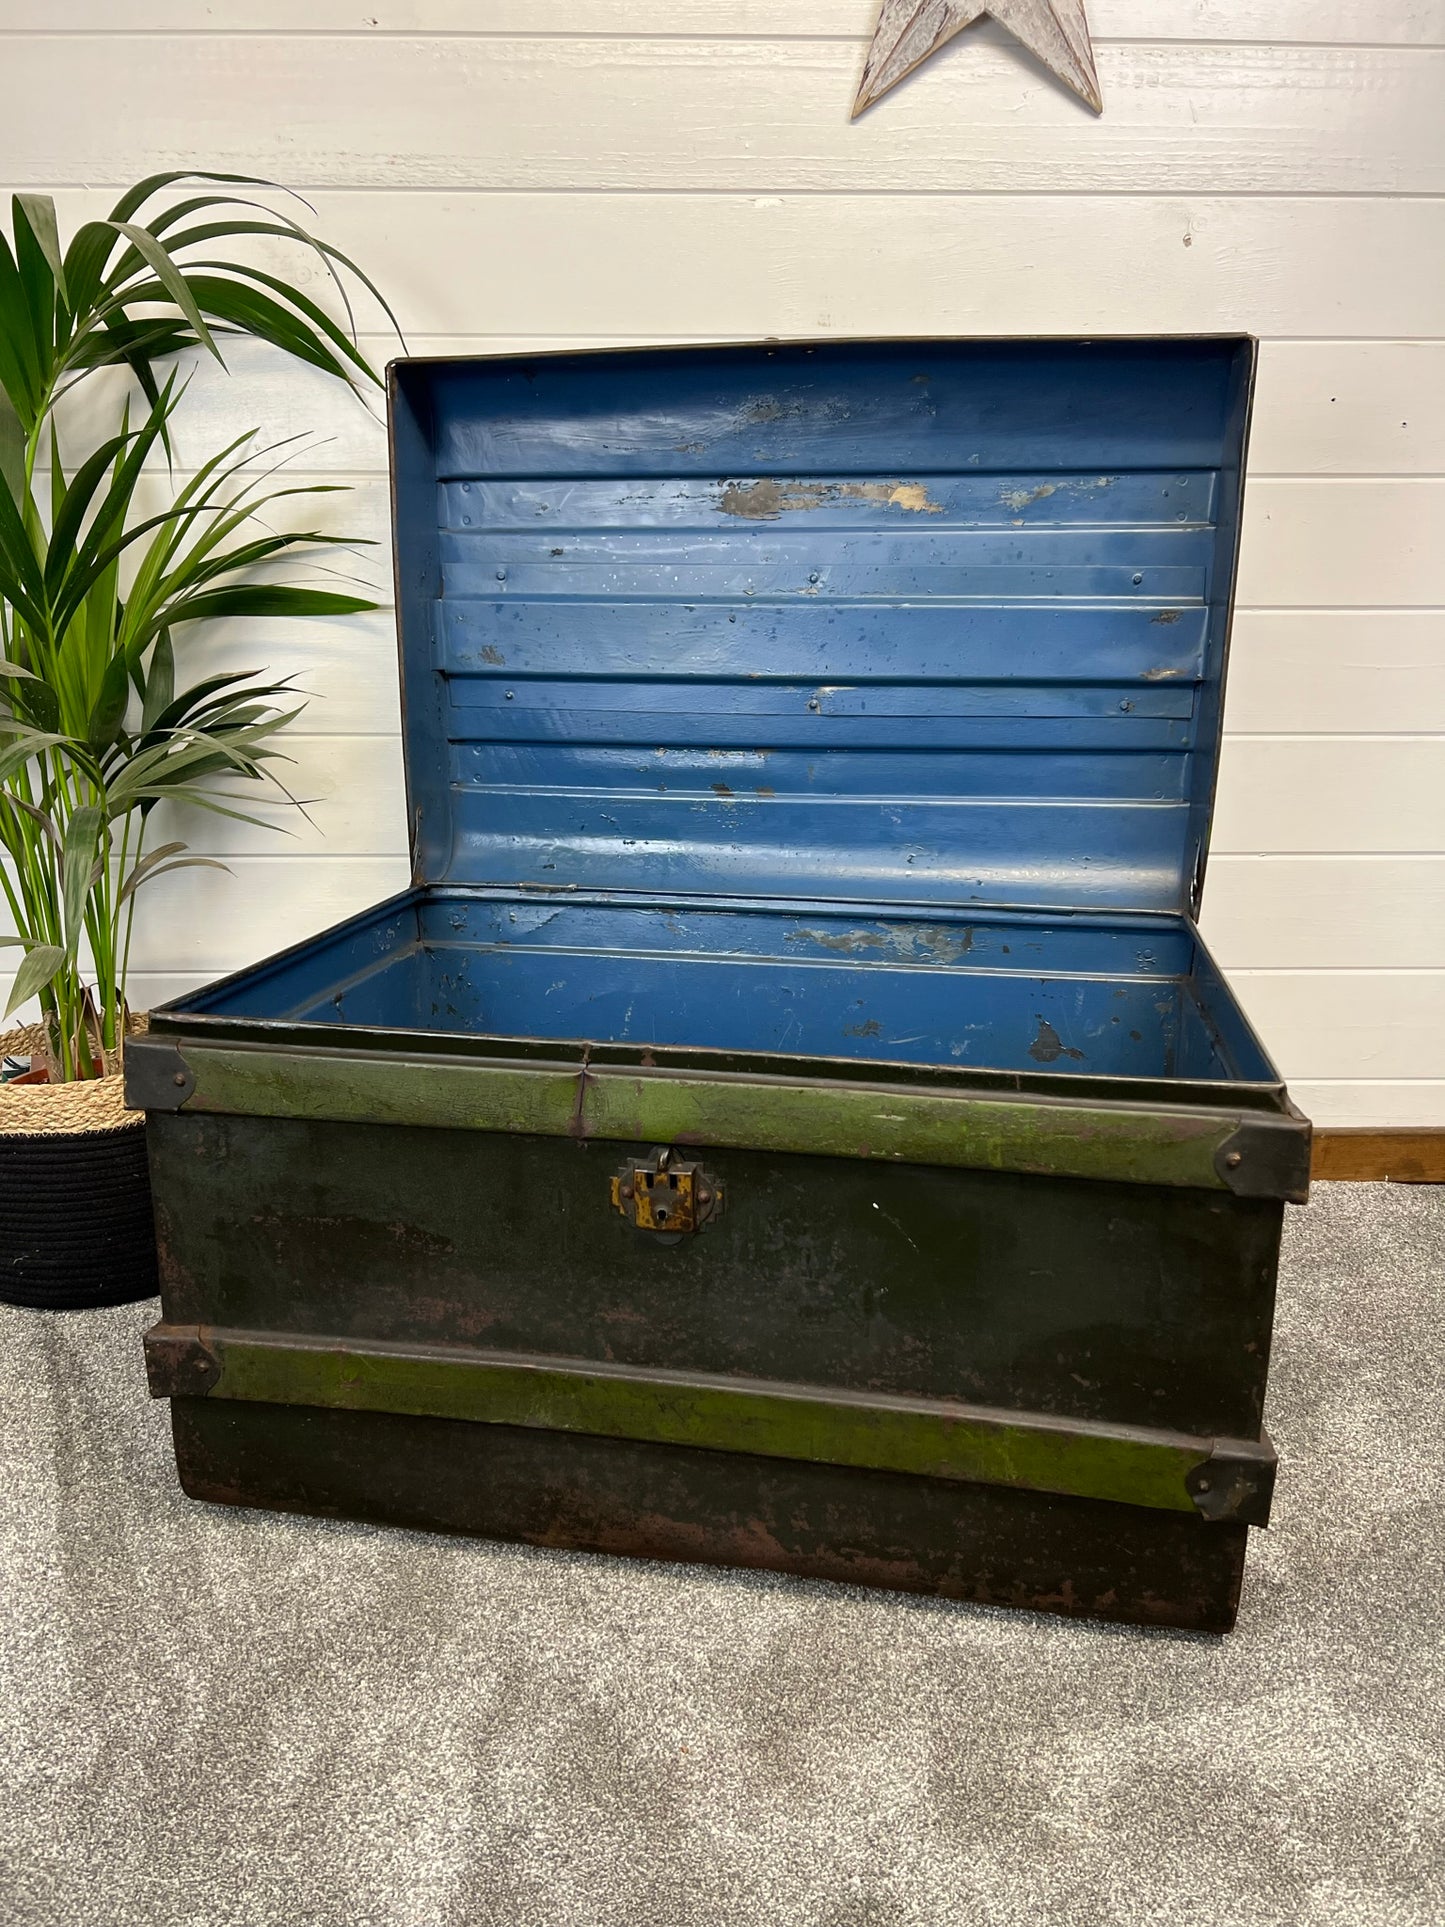 Vintage Metal Steamer Trunk Rustic Coffee Side Table Original Travel Storage Large Trunk